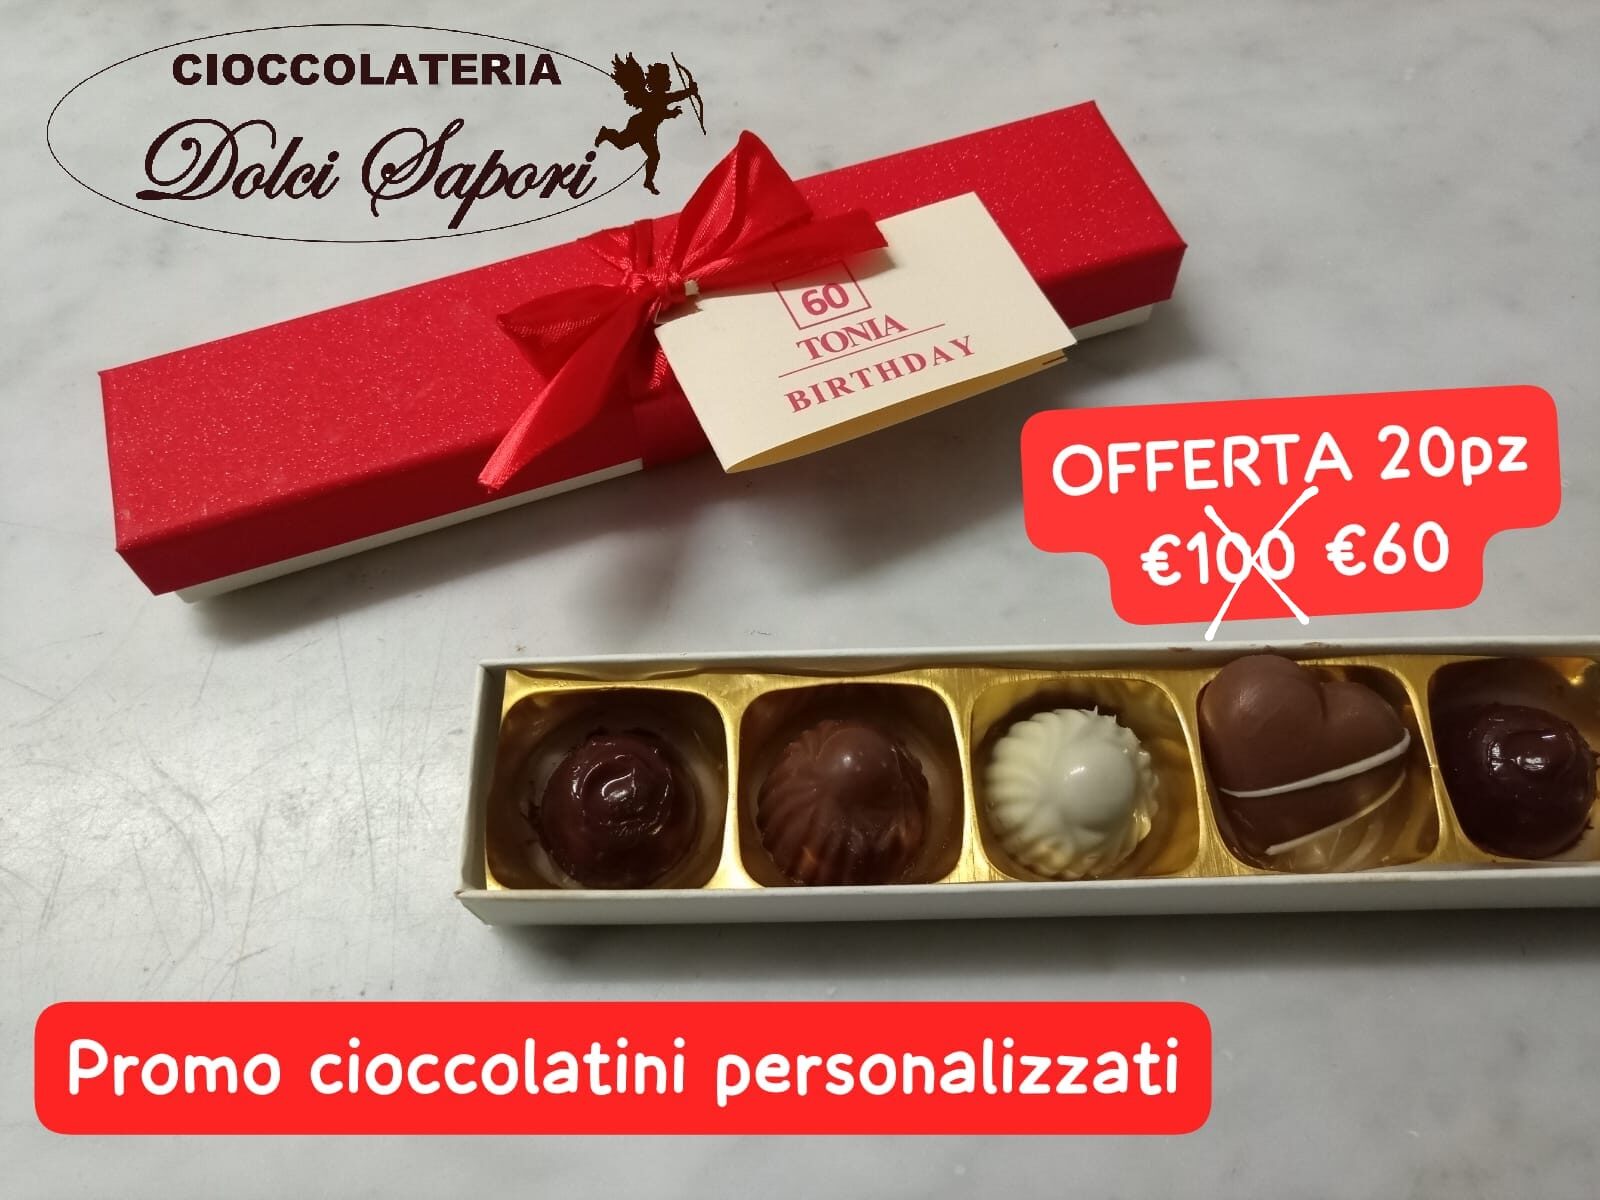 scatolino con 5 cioccolatini + biglietto personalizzato sconto da 20 pz 3 €